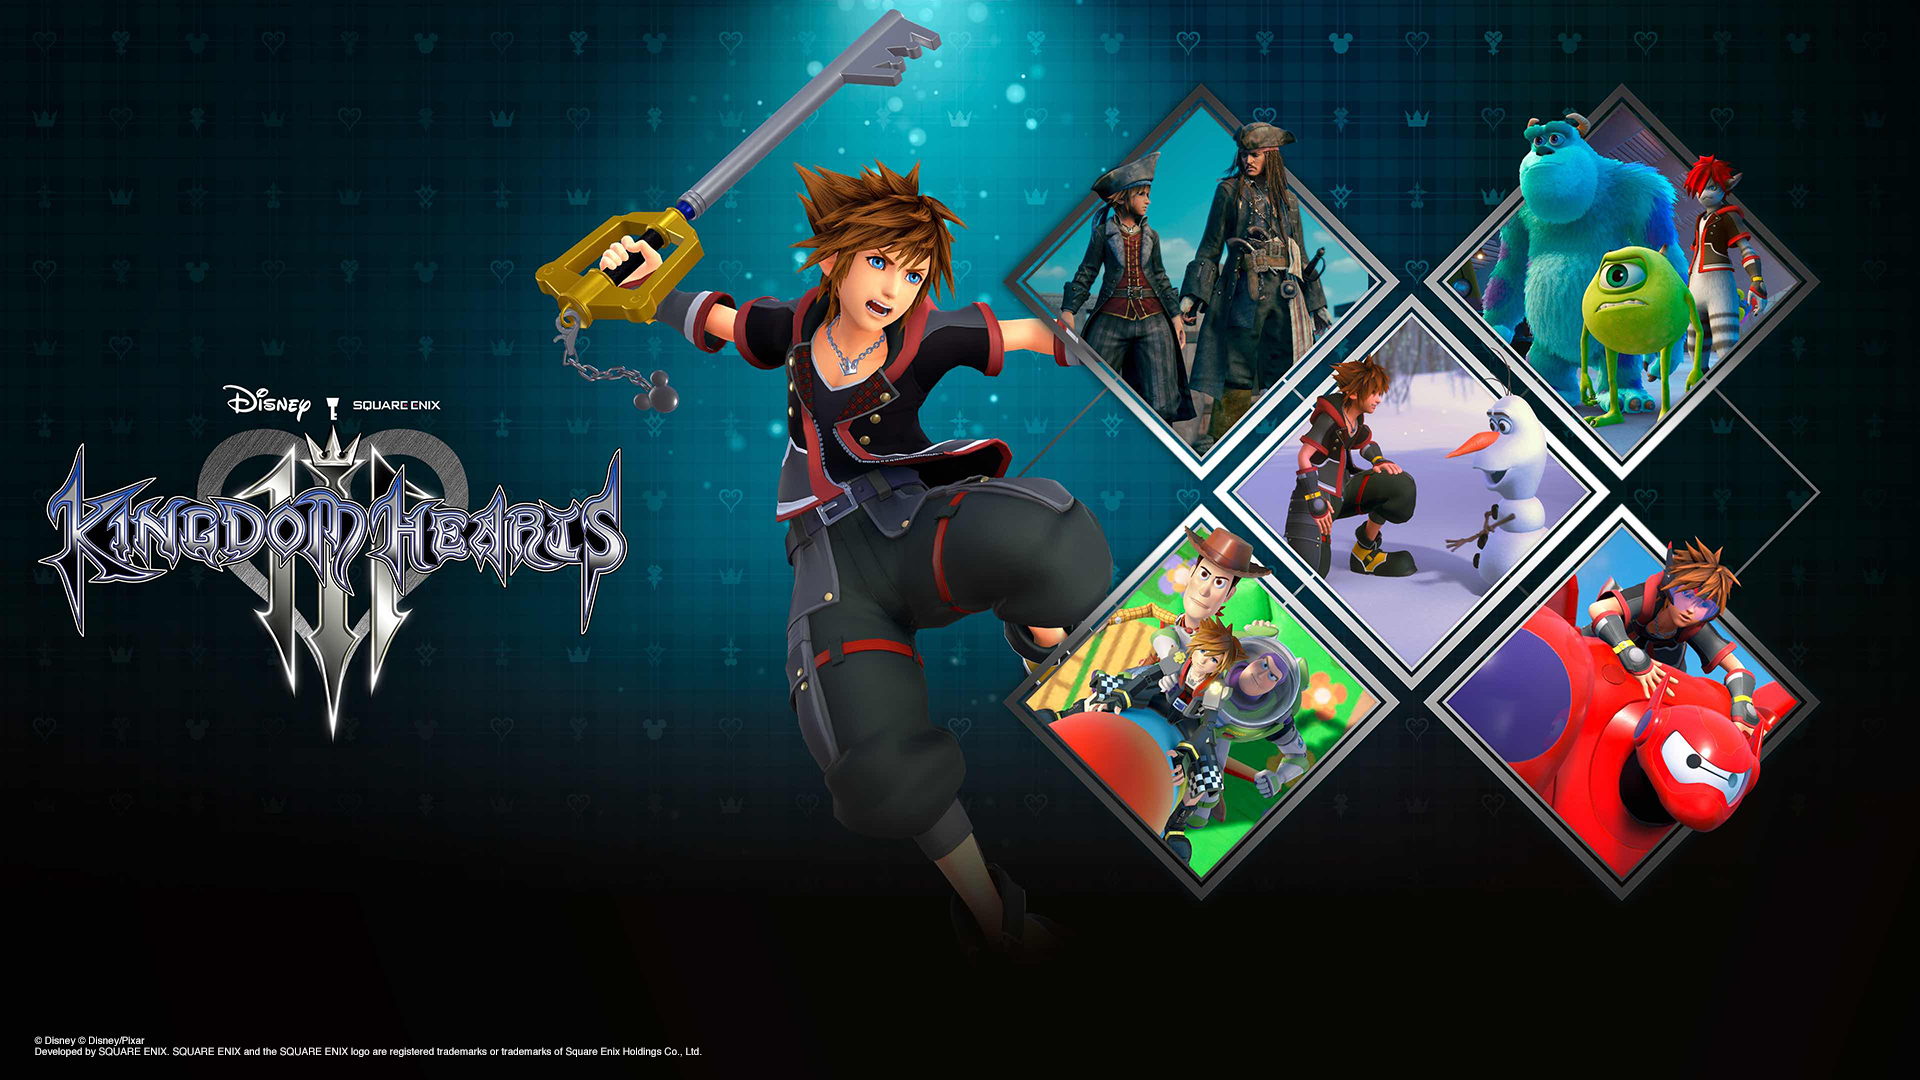 X019 Classic Games In Kingdom Hearts Saga Come To Xbox One Xbox Wire